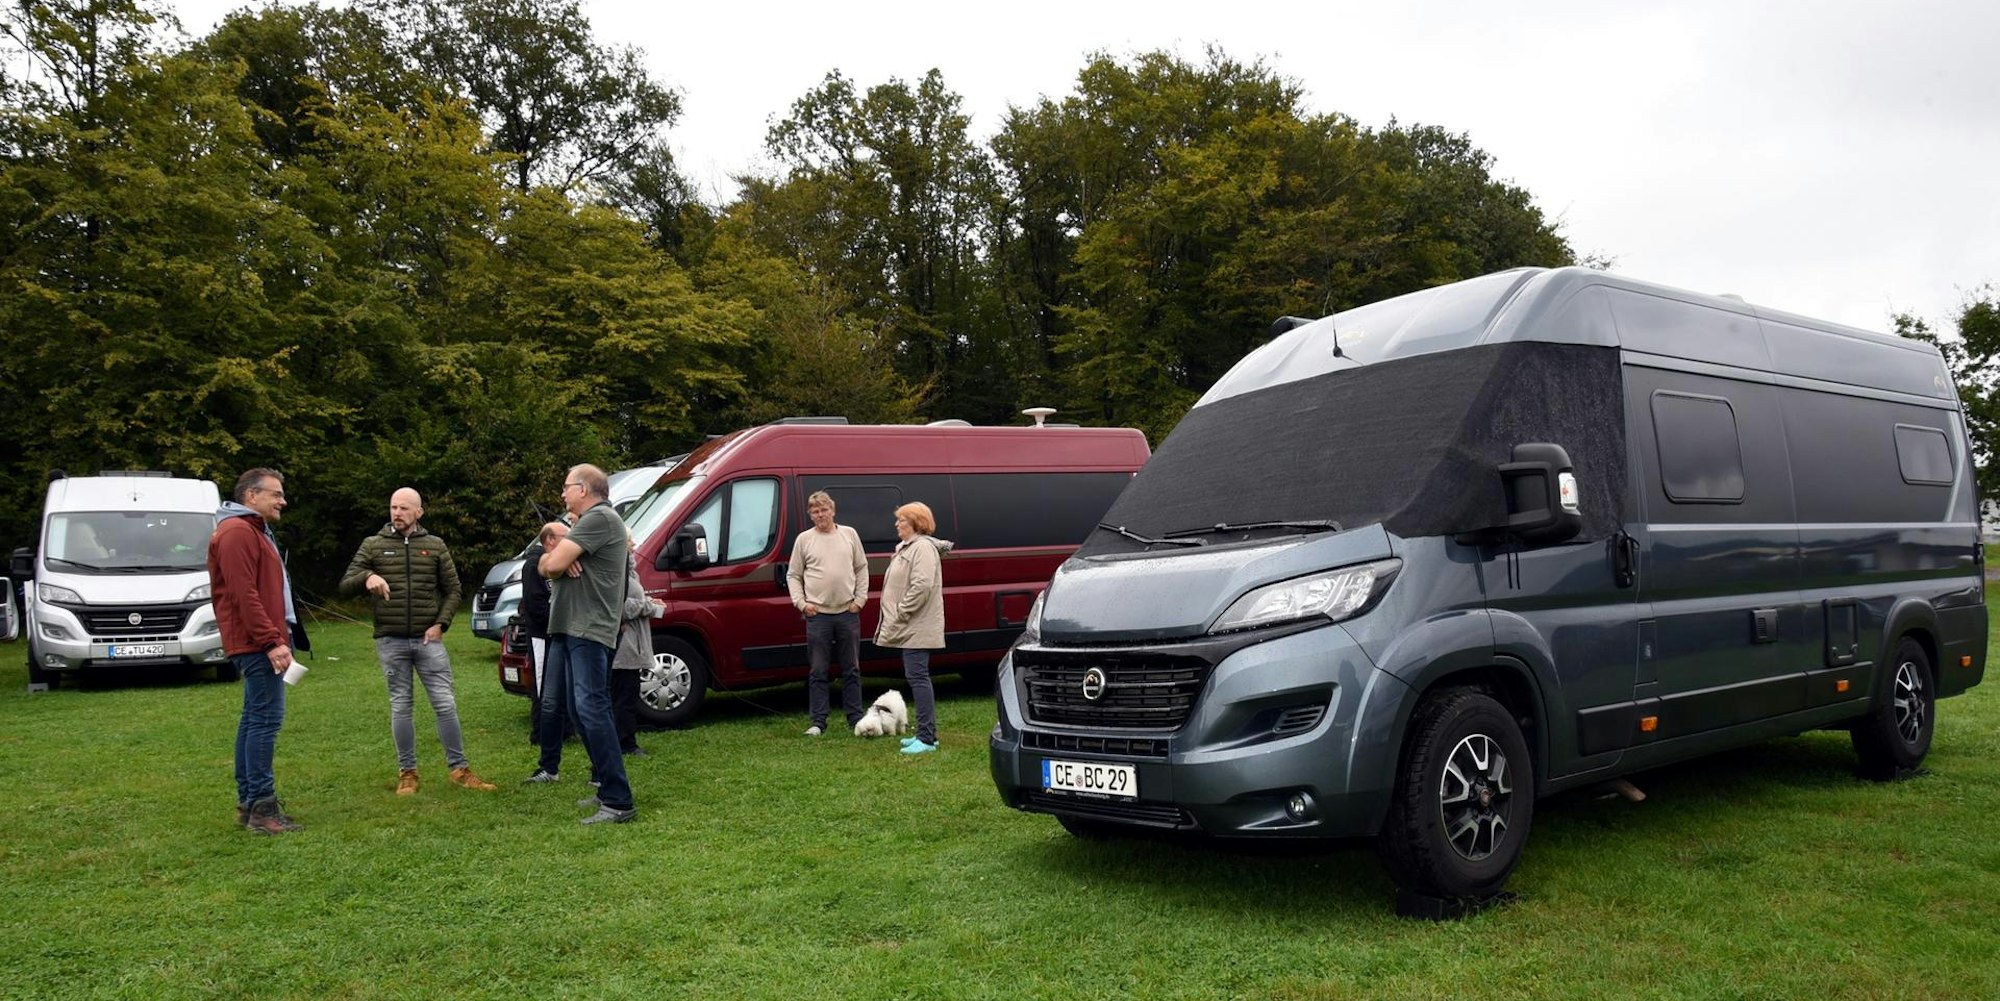 Campingfans aus ganz Deutschland treffen sich in ihren Vans der Hersteller Mooveo und Pilote auf dem Campingplatz in Oberbüschem.